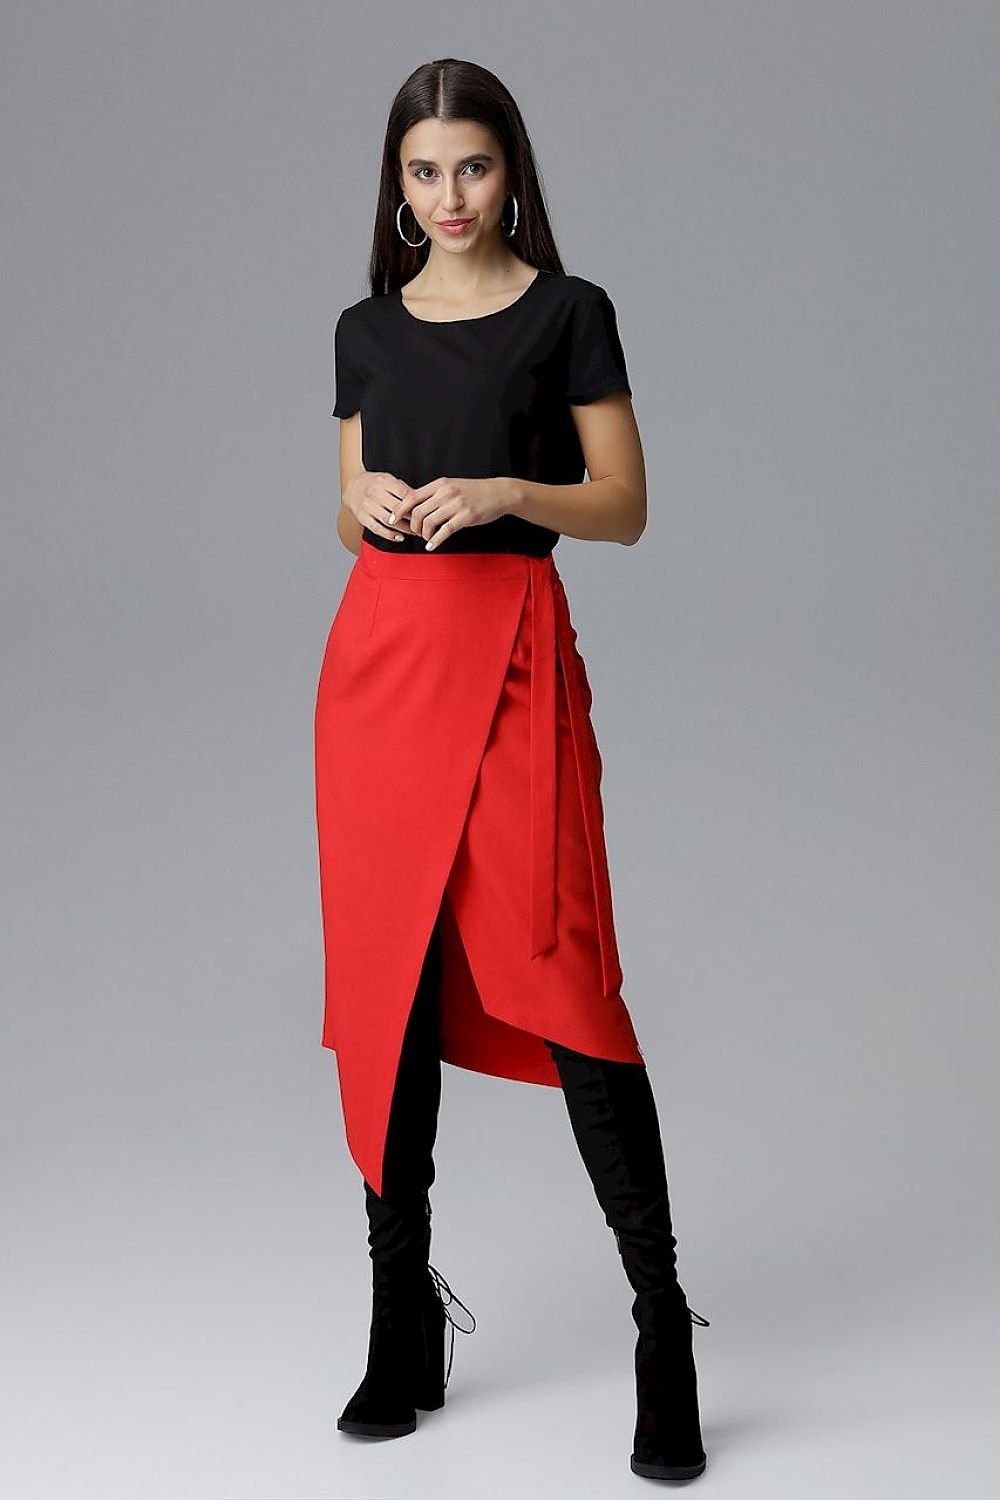 Jupe asymétrique portefeuille rouge élégante, stylée pour un look moderne et chic, à associer avec des hauts décontractés ou formels.